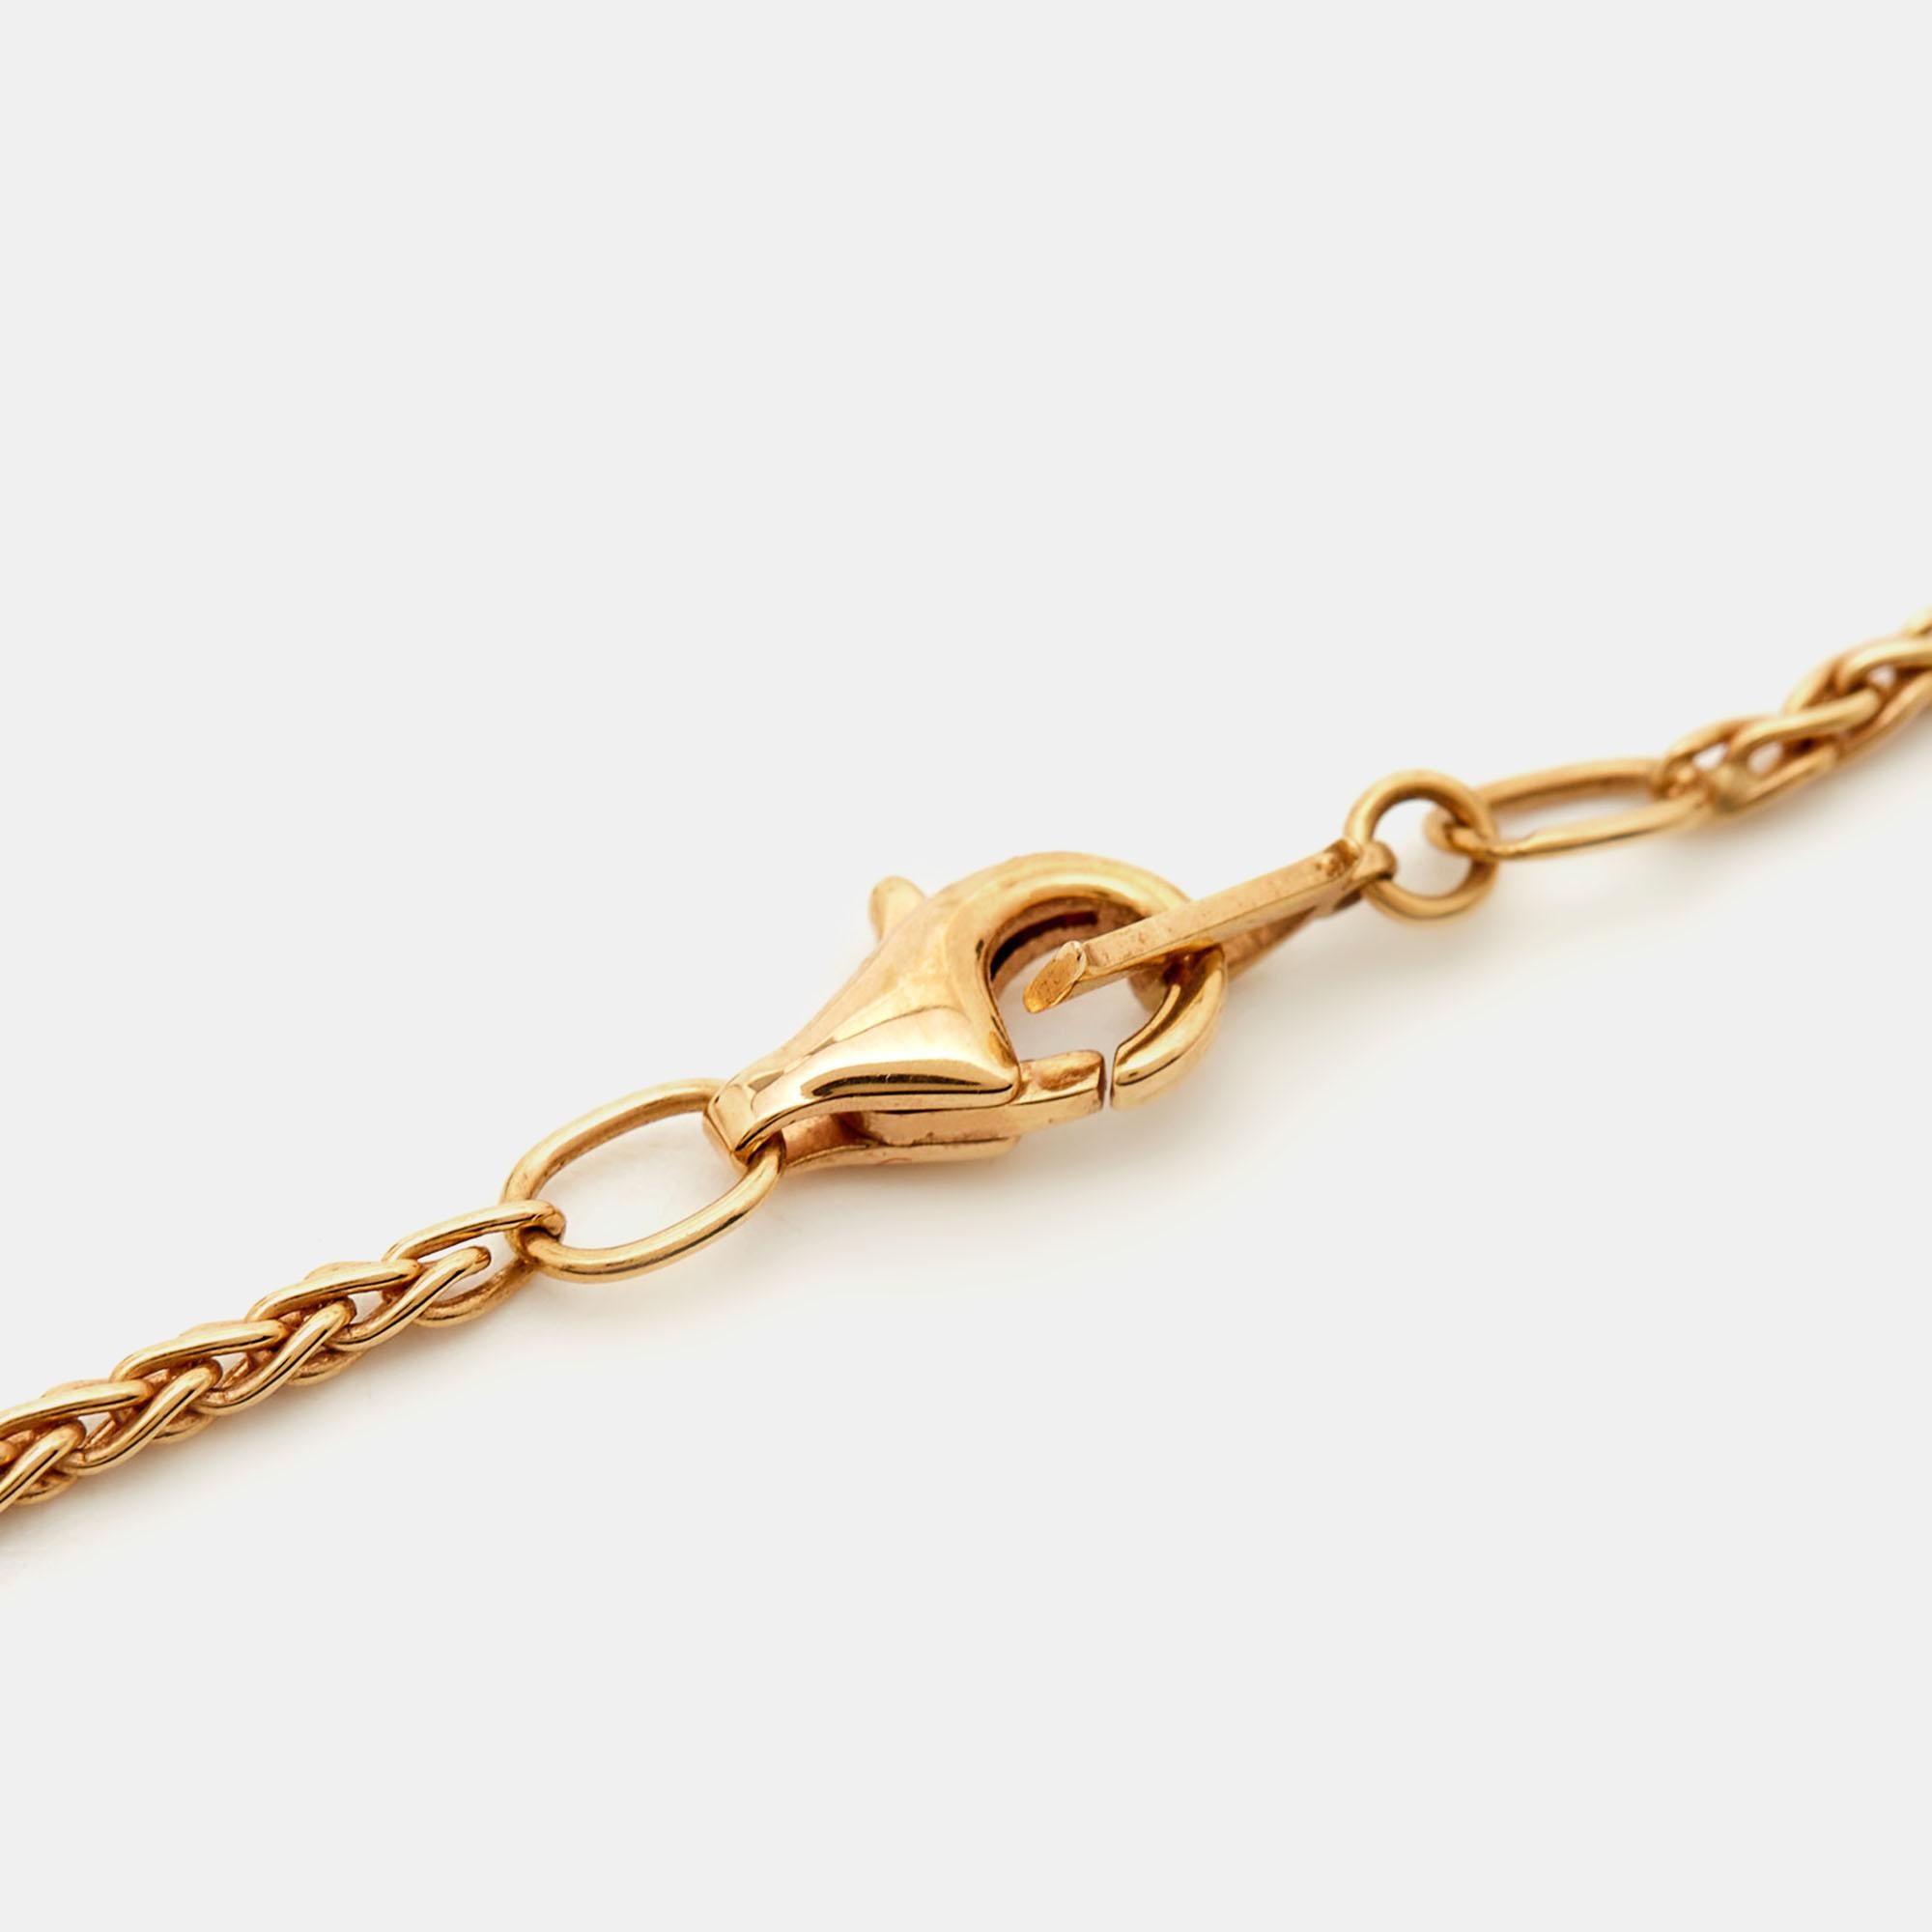 Ce collier de Piaget transmet l'élégance grâce à son design distinctif. Il est synonyme de style impeccable et de luxe ultime. Affichez vos goûts en matière de mode en achetant cette beauté dès aujourd'hui !

Comprend : Boîte d'origine, étui